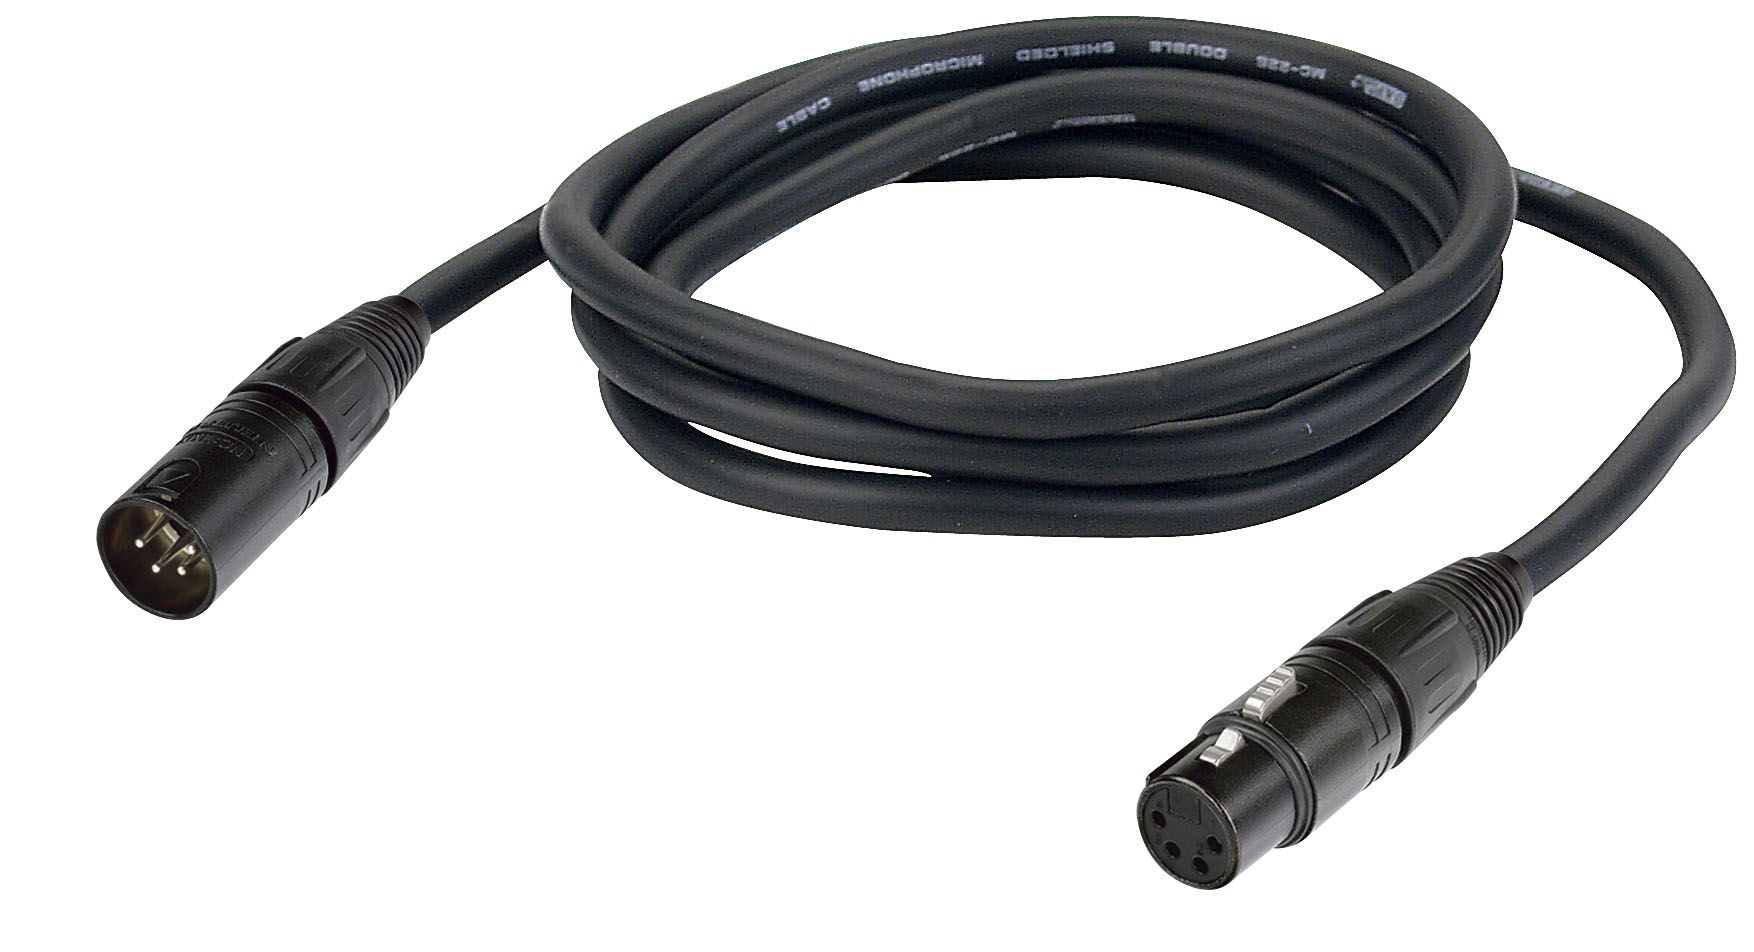 XLR Cable 4p M/F 6mtr, with Neutrik connectors